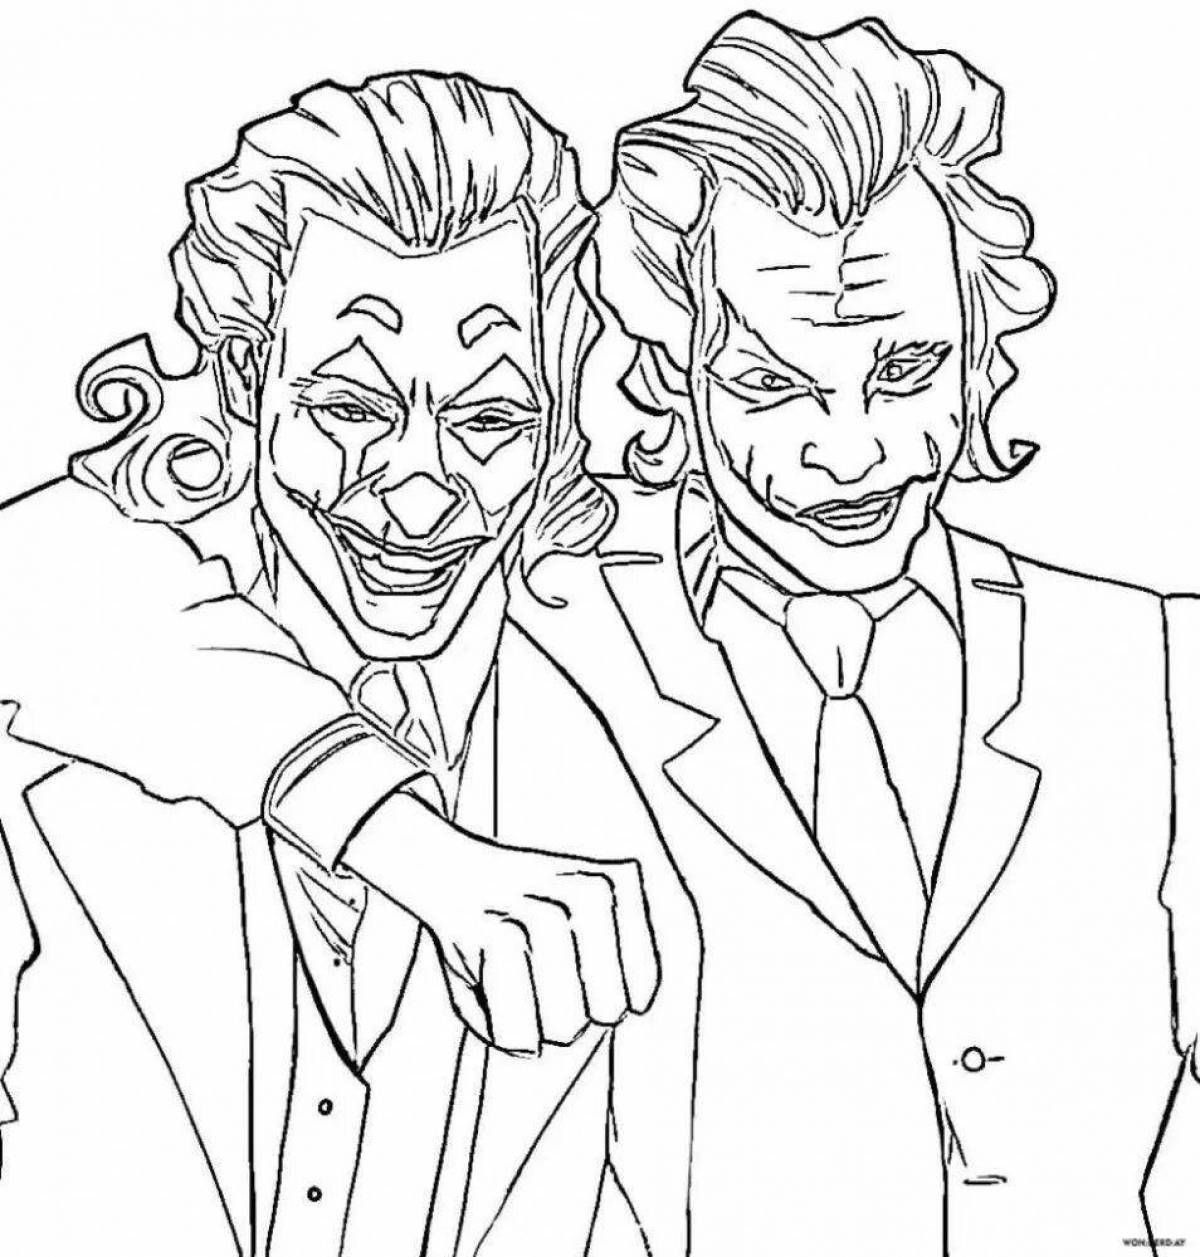 Fun coloring book batman and joker